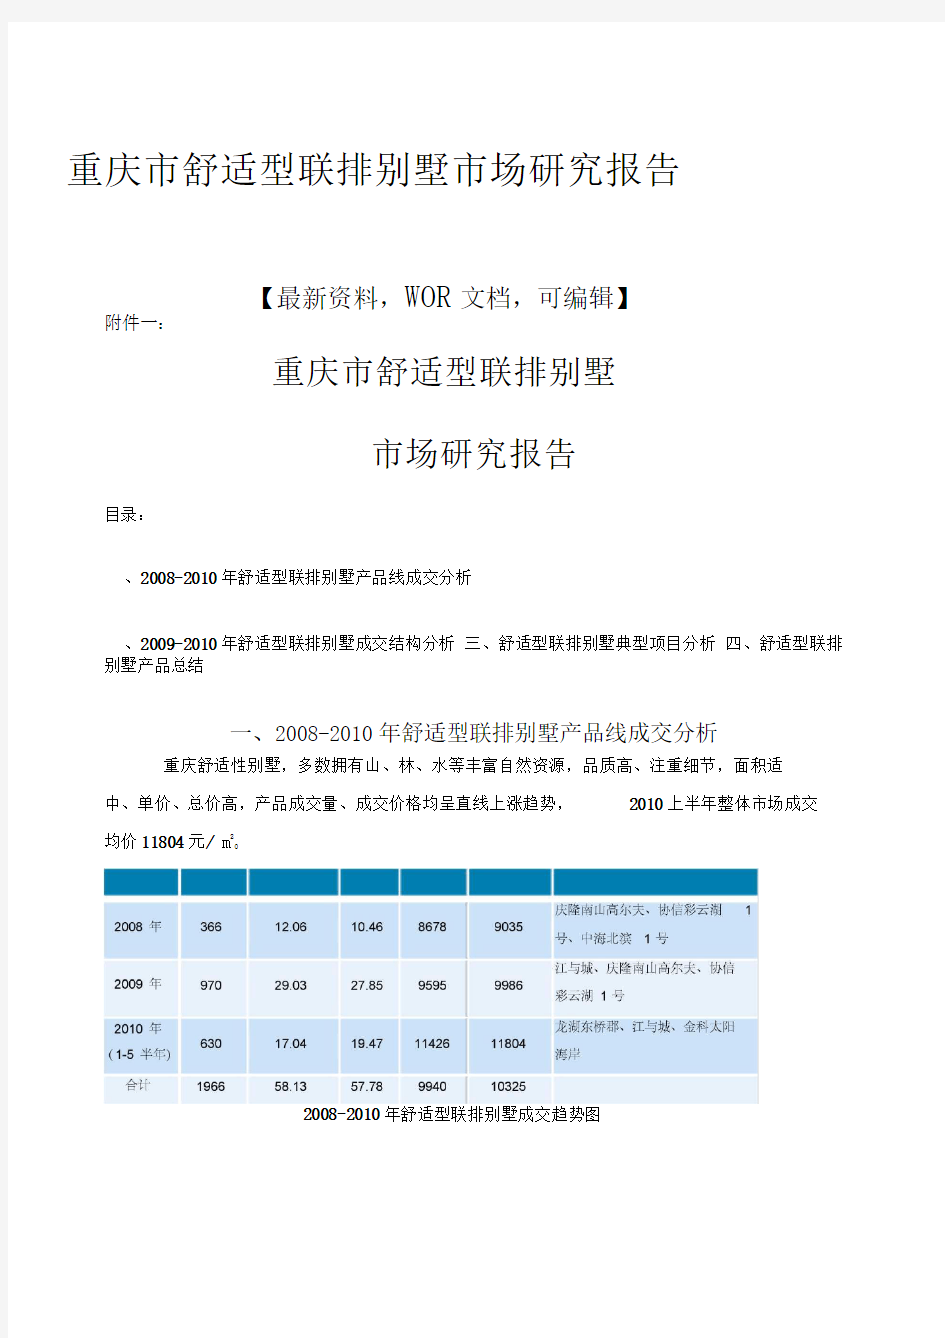 重庆市舒适型联排别墅市场研究报告